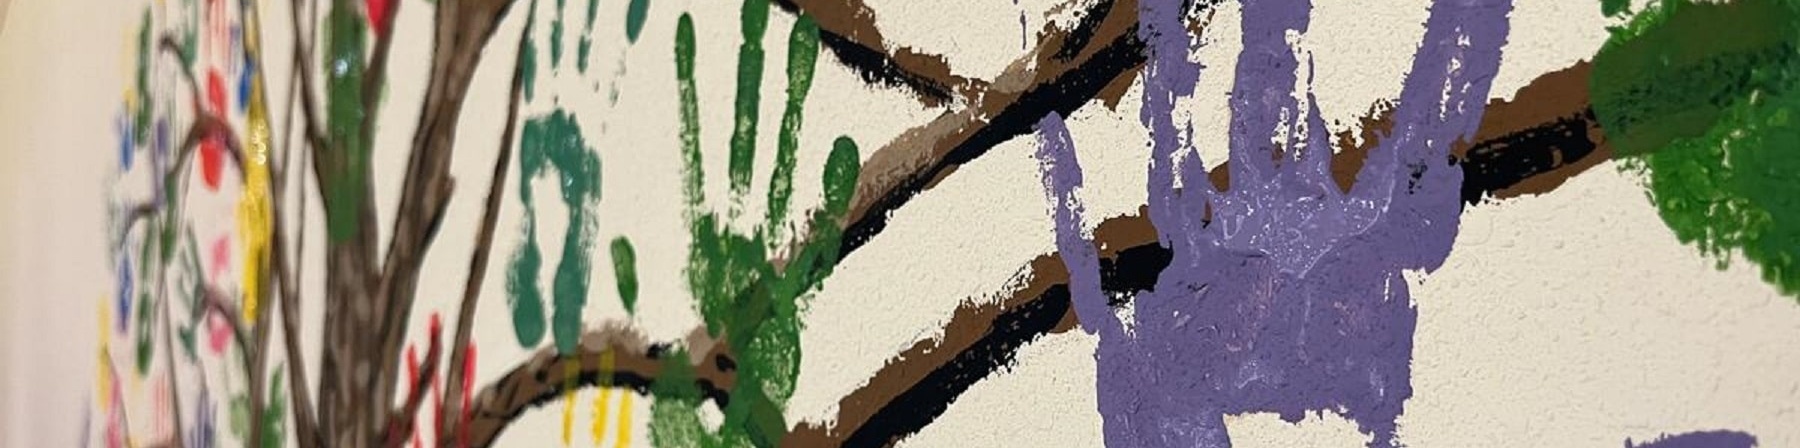 impronte mani colorate di bambini dipinte su muro attorno a rami 